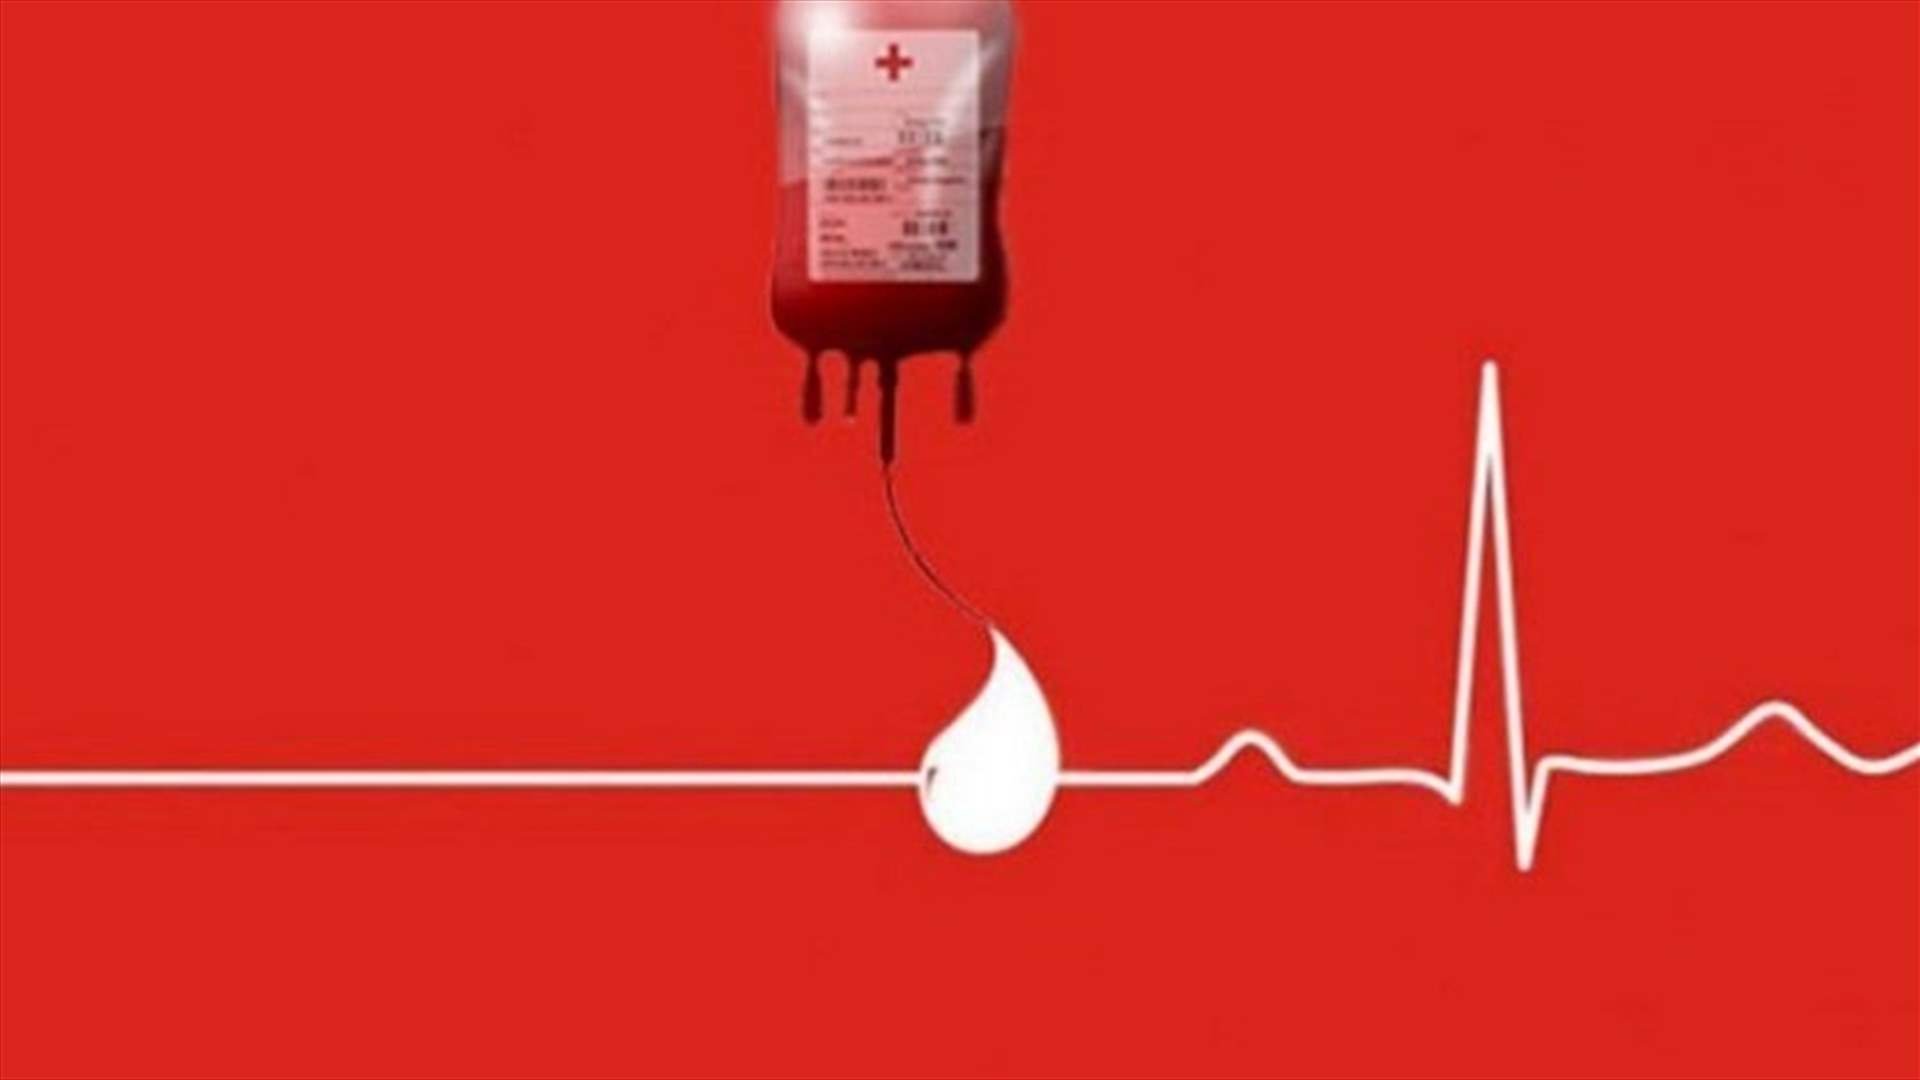 مريضة بحاجة إلى دم من فئة A+ في مستشفى الجعيتاوي للتبرع الاتصال على الرقم 03459310